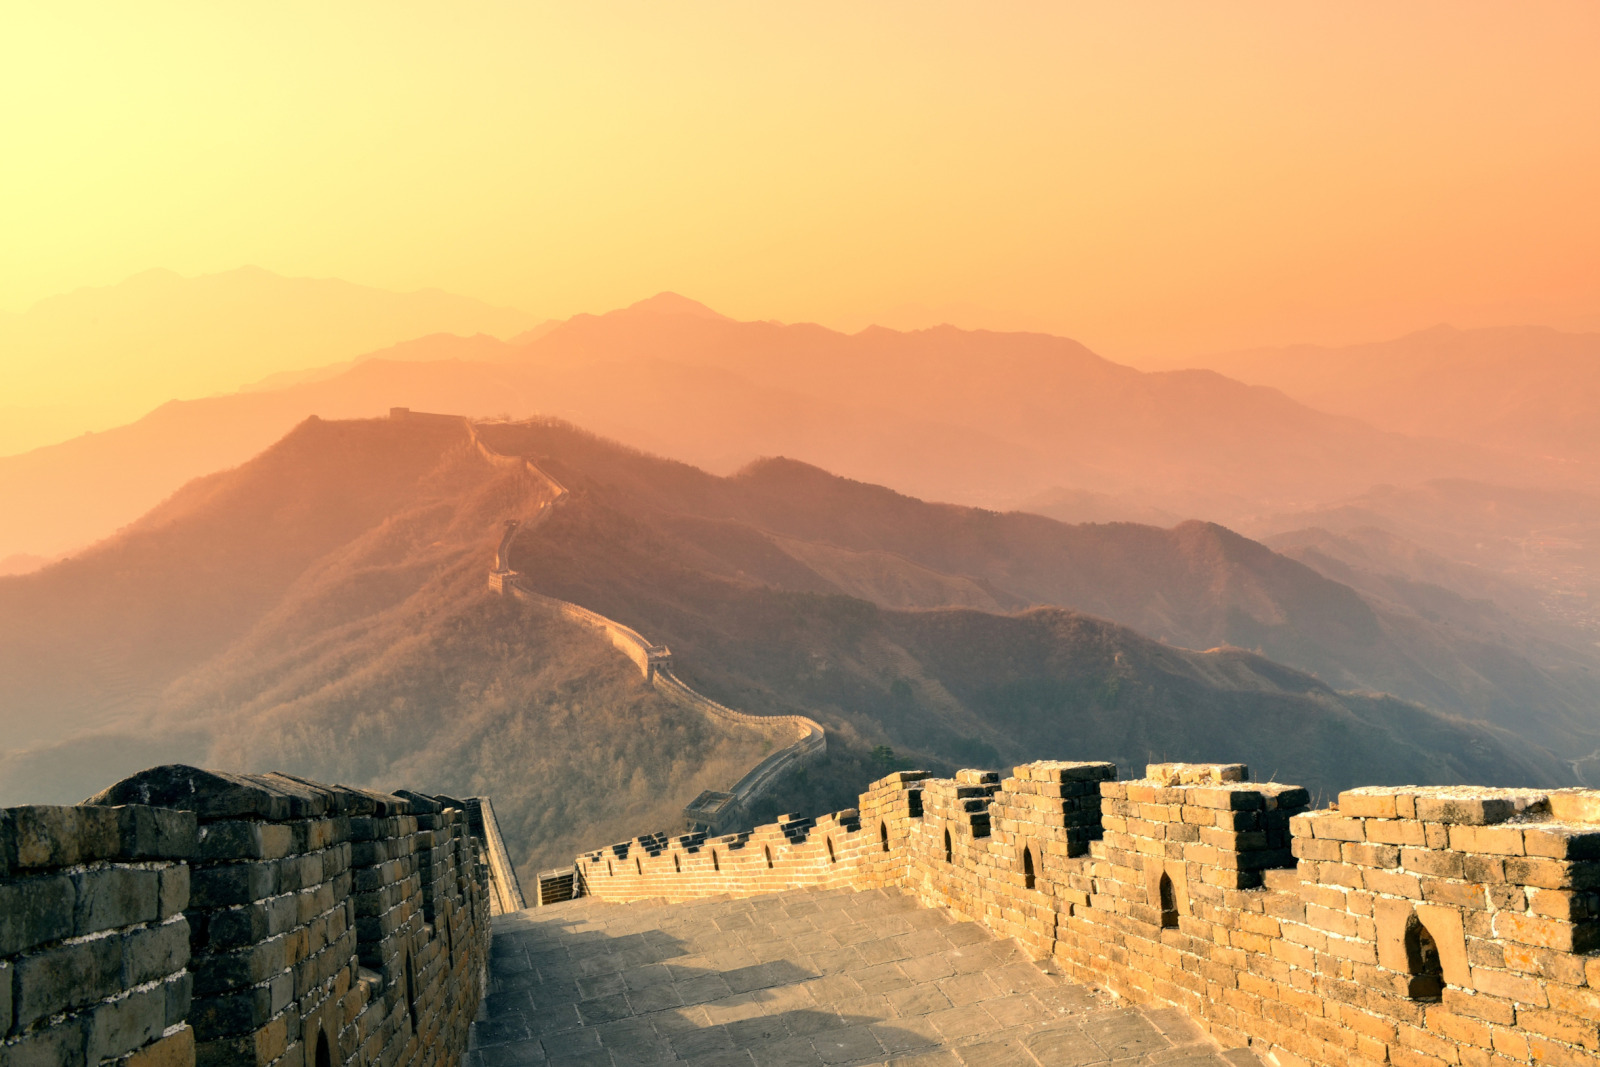 Photo de la muraille de Chine sous un soleil couchant.